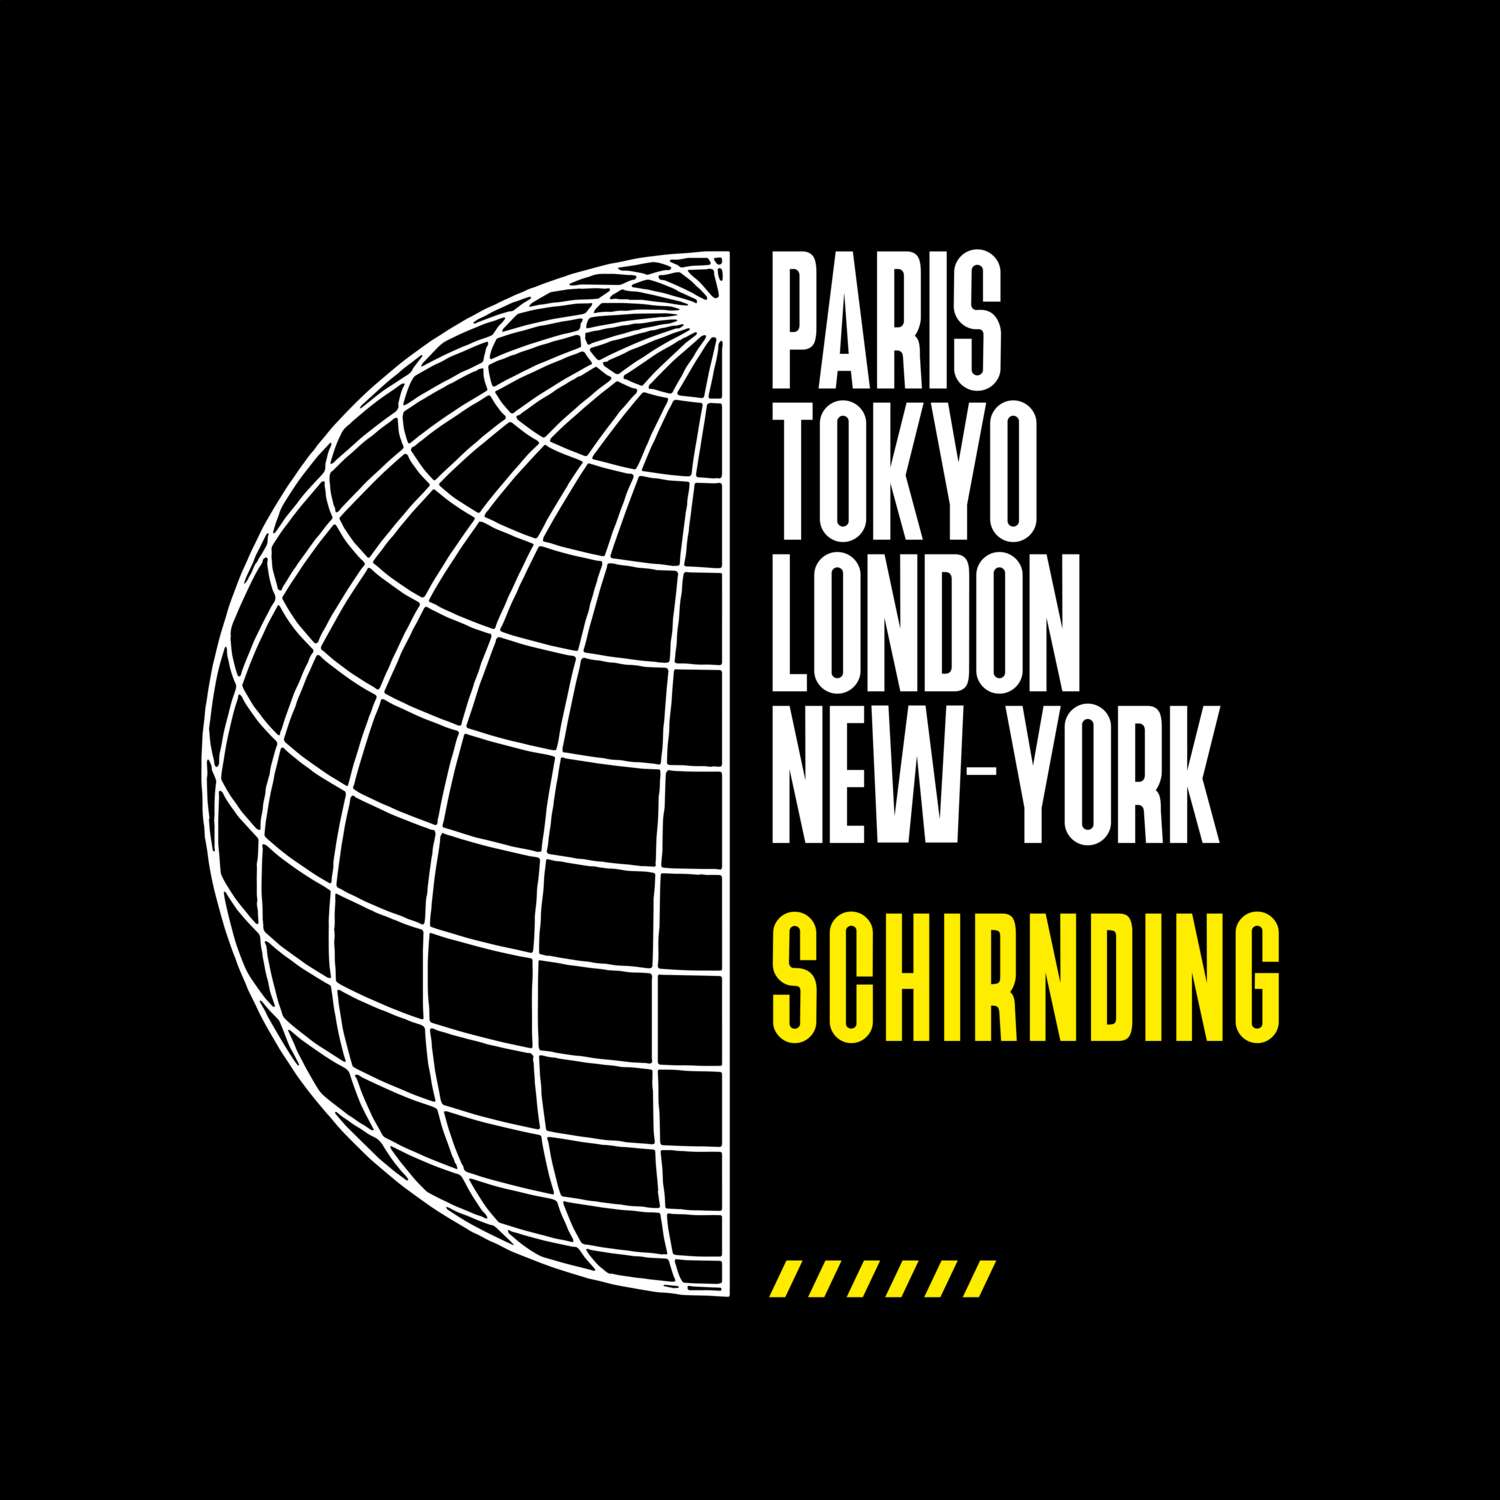 Schirnding T-Shirt »Paris Tokyo London«